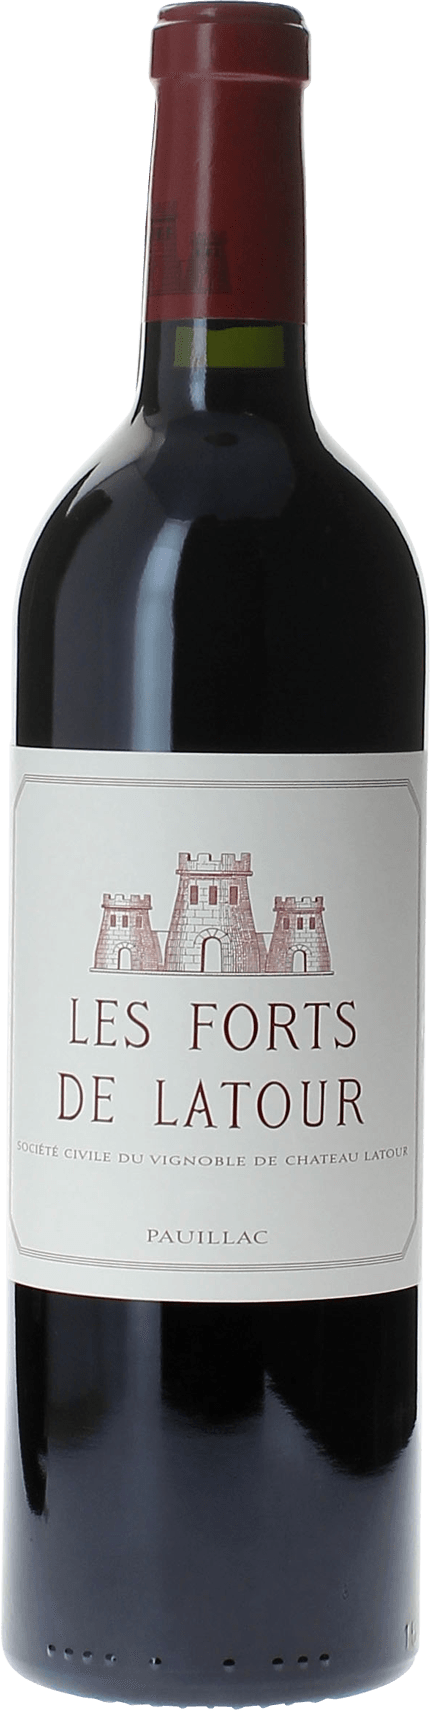 Les forts de latour 1984 2me vin de LATOUR Pauillac, Bordeaux rouge